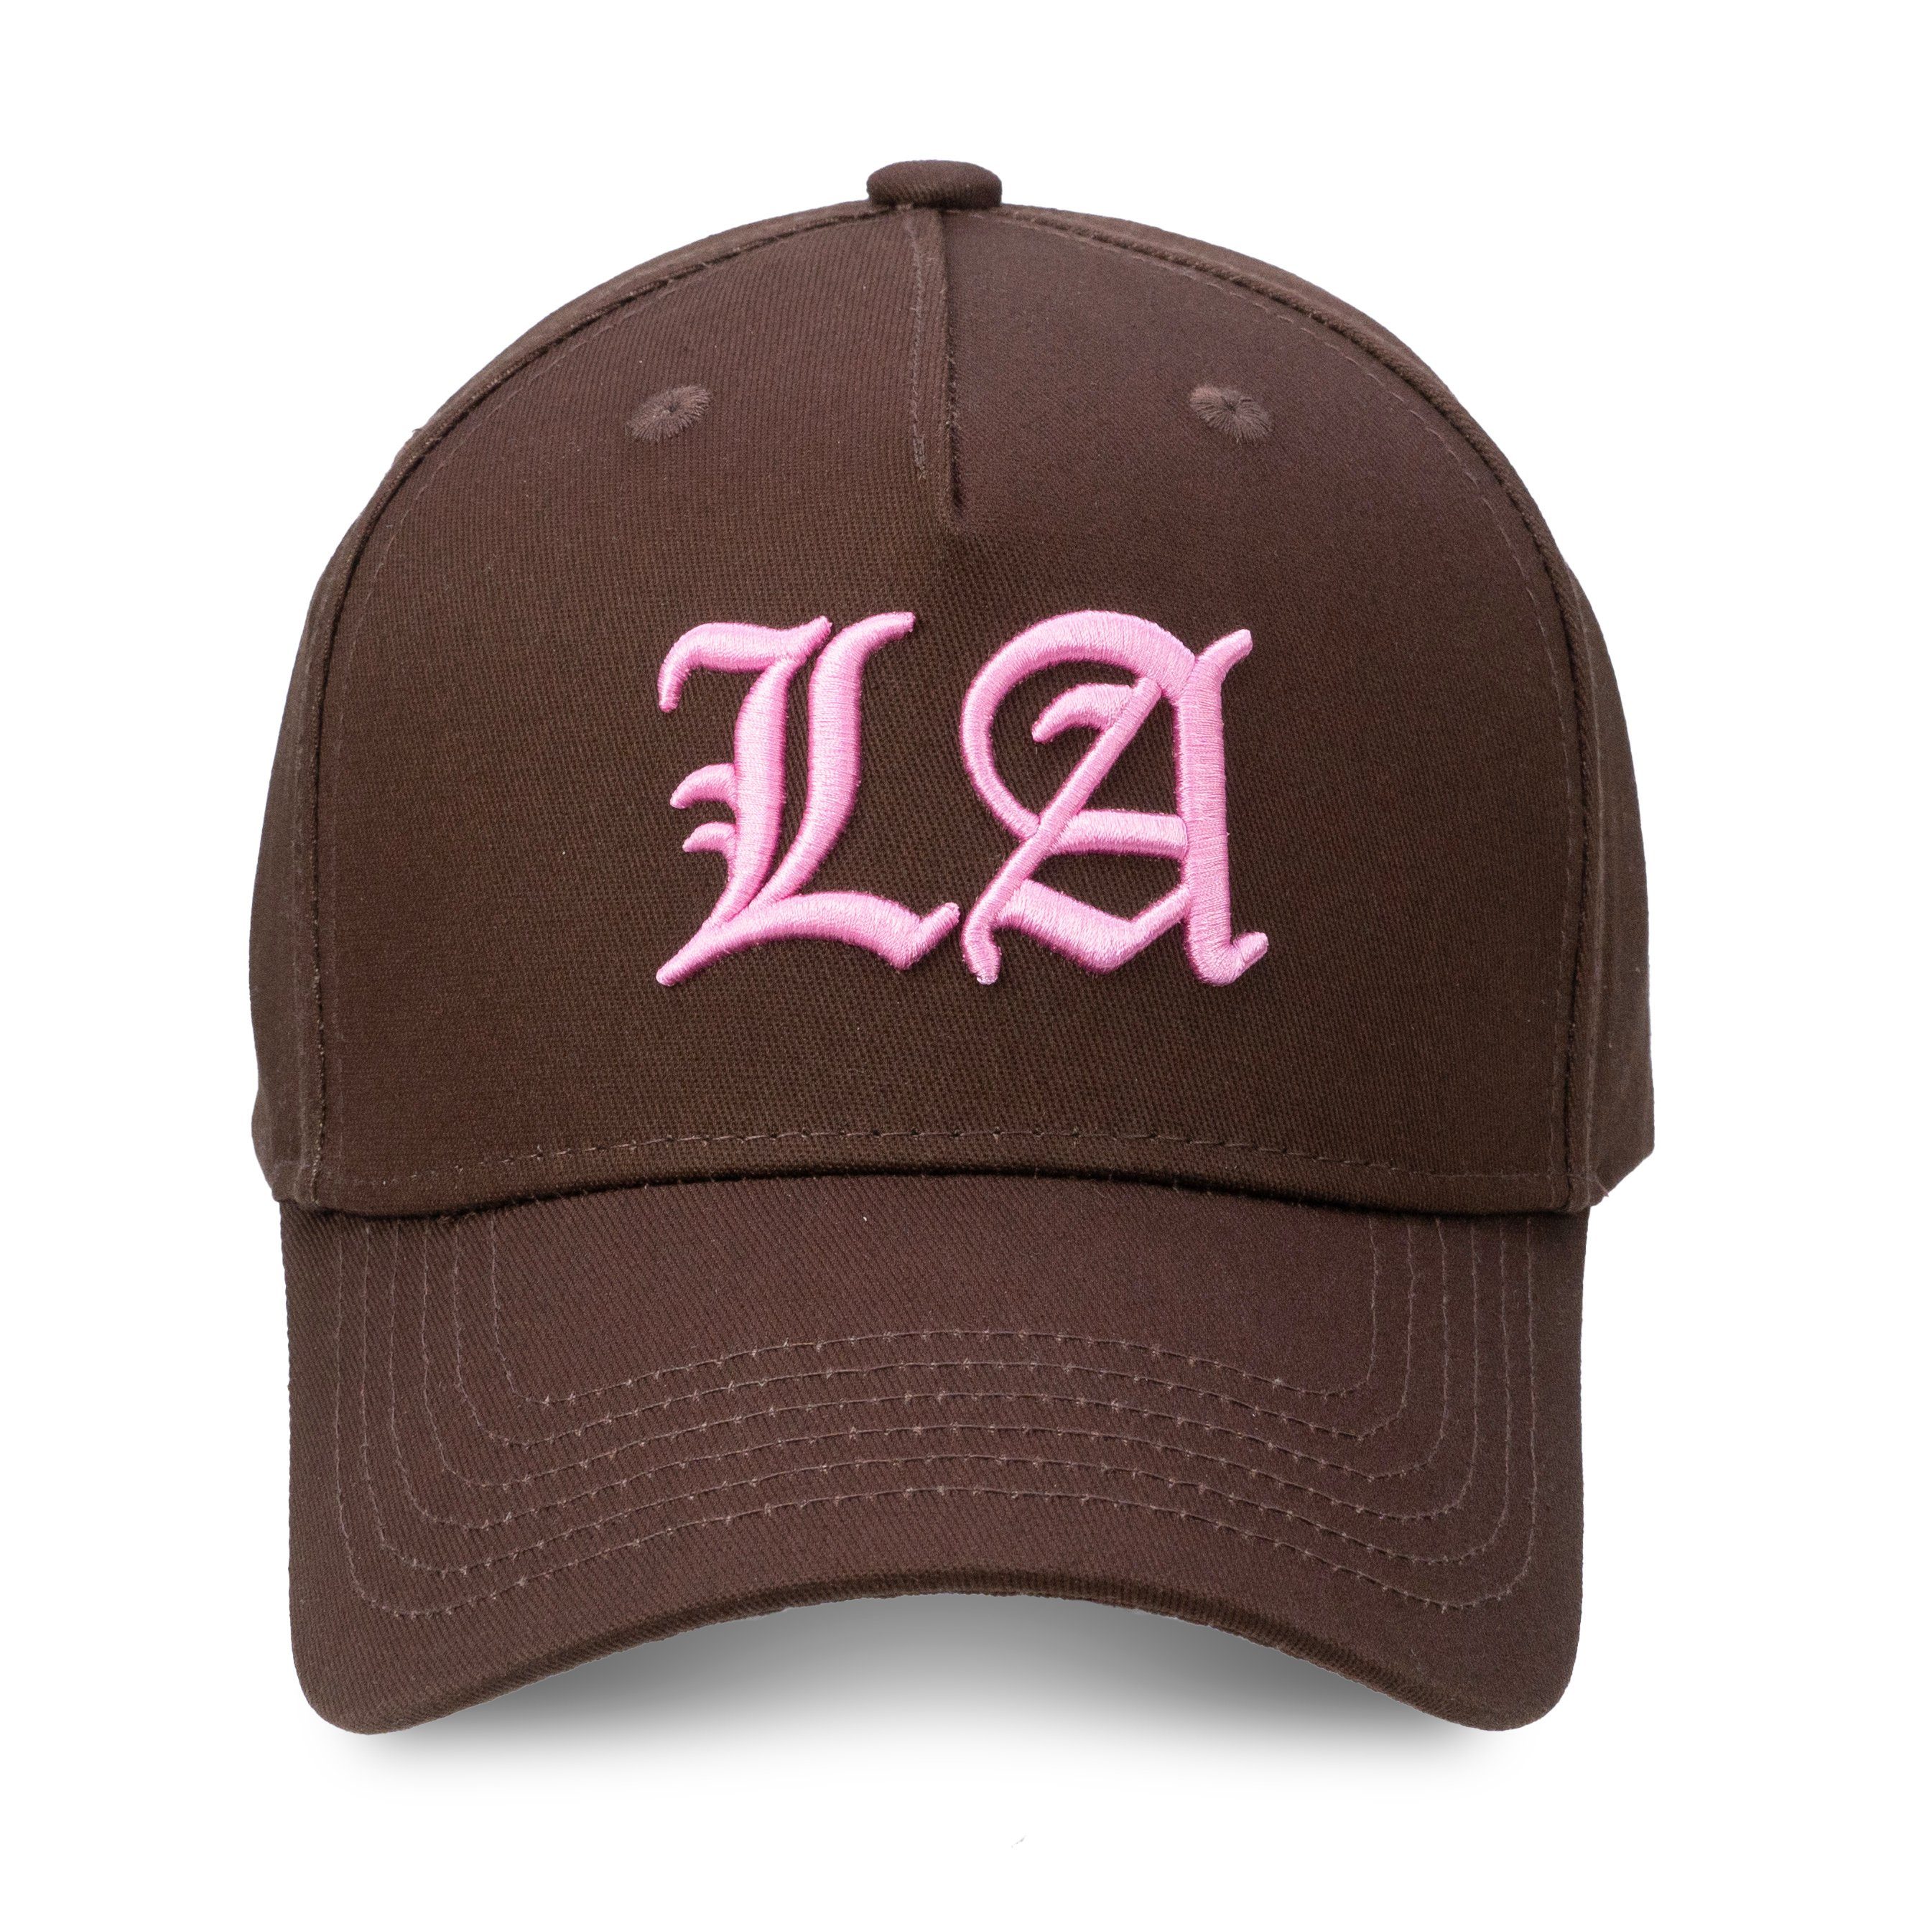 Chiccheria Brand Trucker LA in Cap Chocolate-Pink, LA Designed